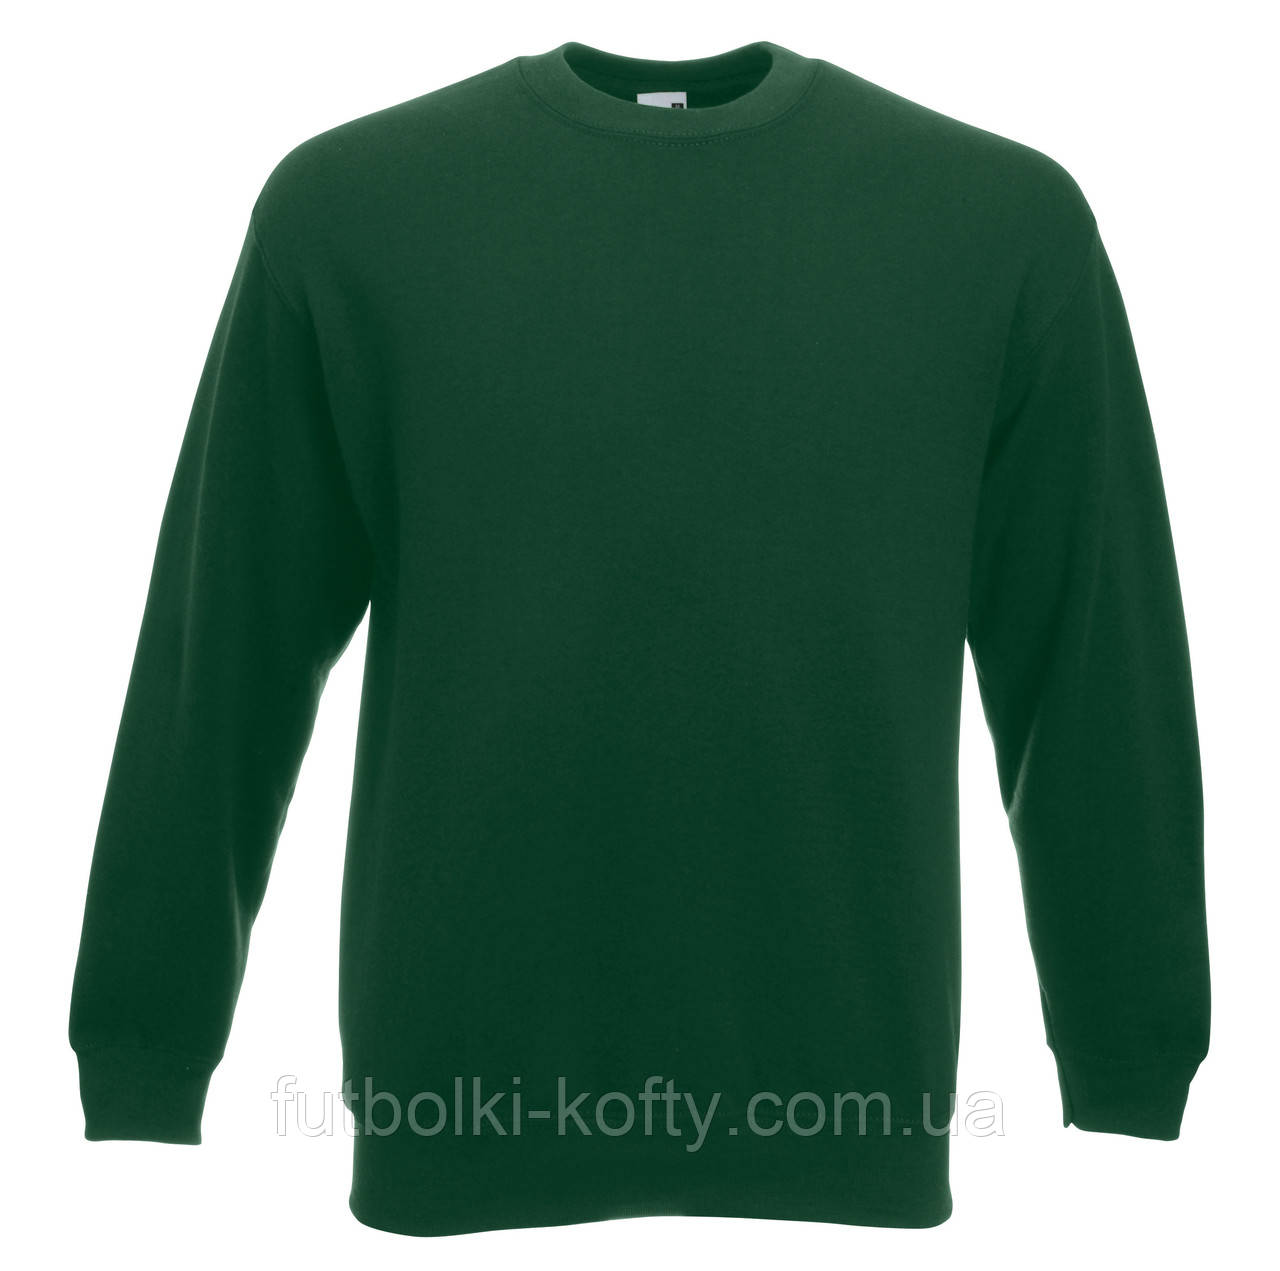 Чоловічий класичний светр Темно-зелений Fruit Of The Loom 62-202-38 М